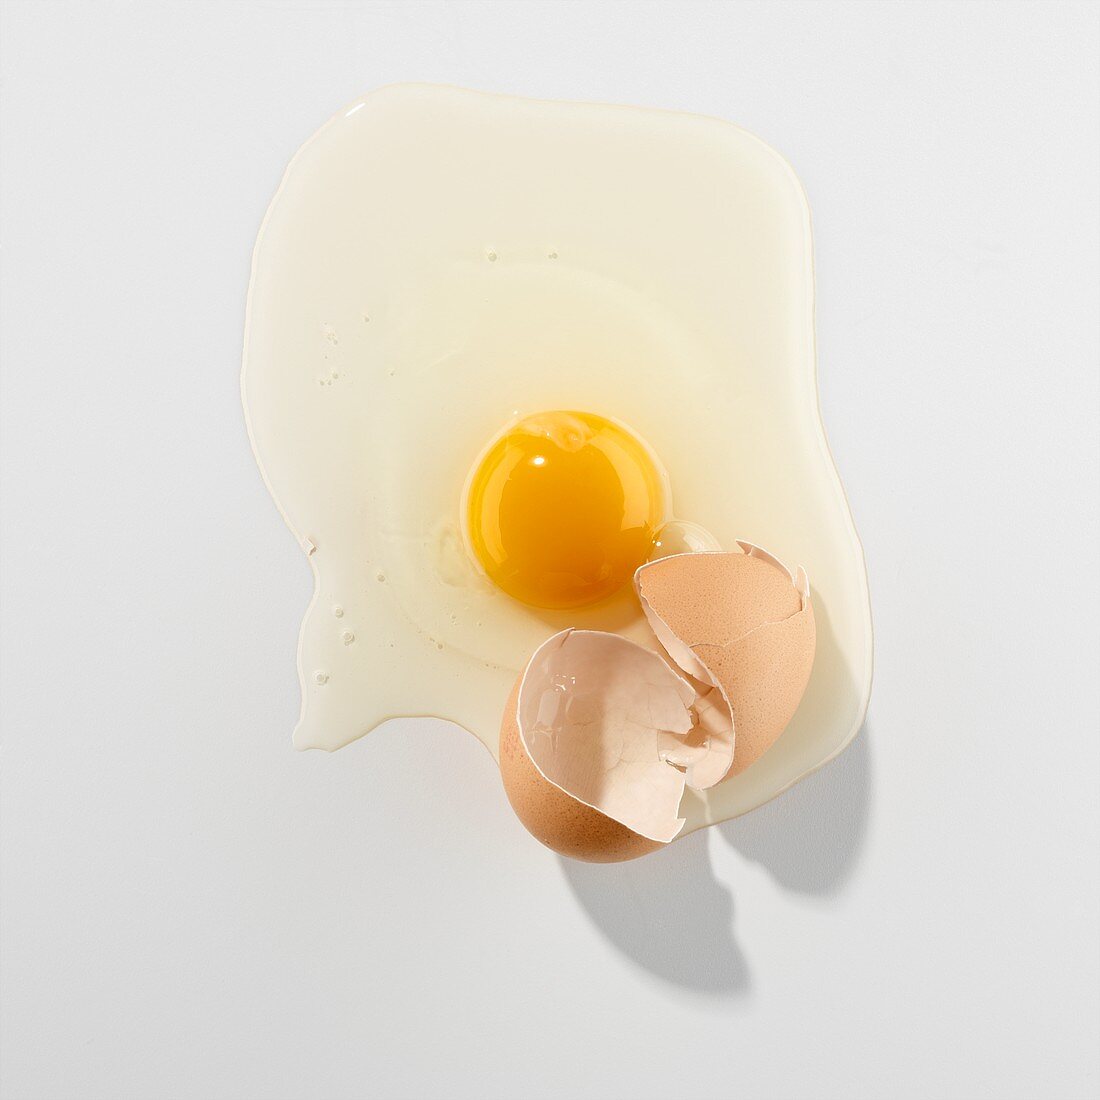 Ein zerbrochenes Ei